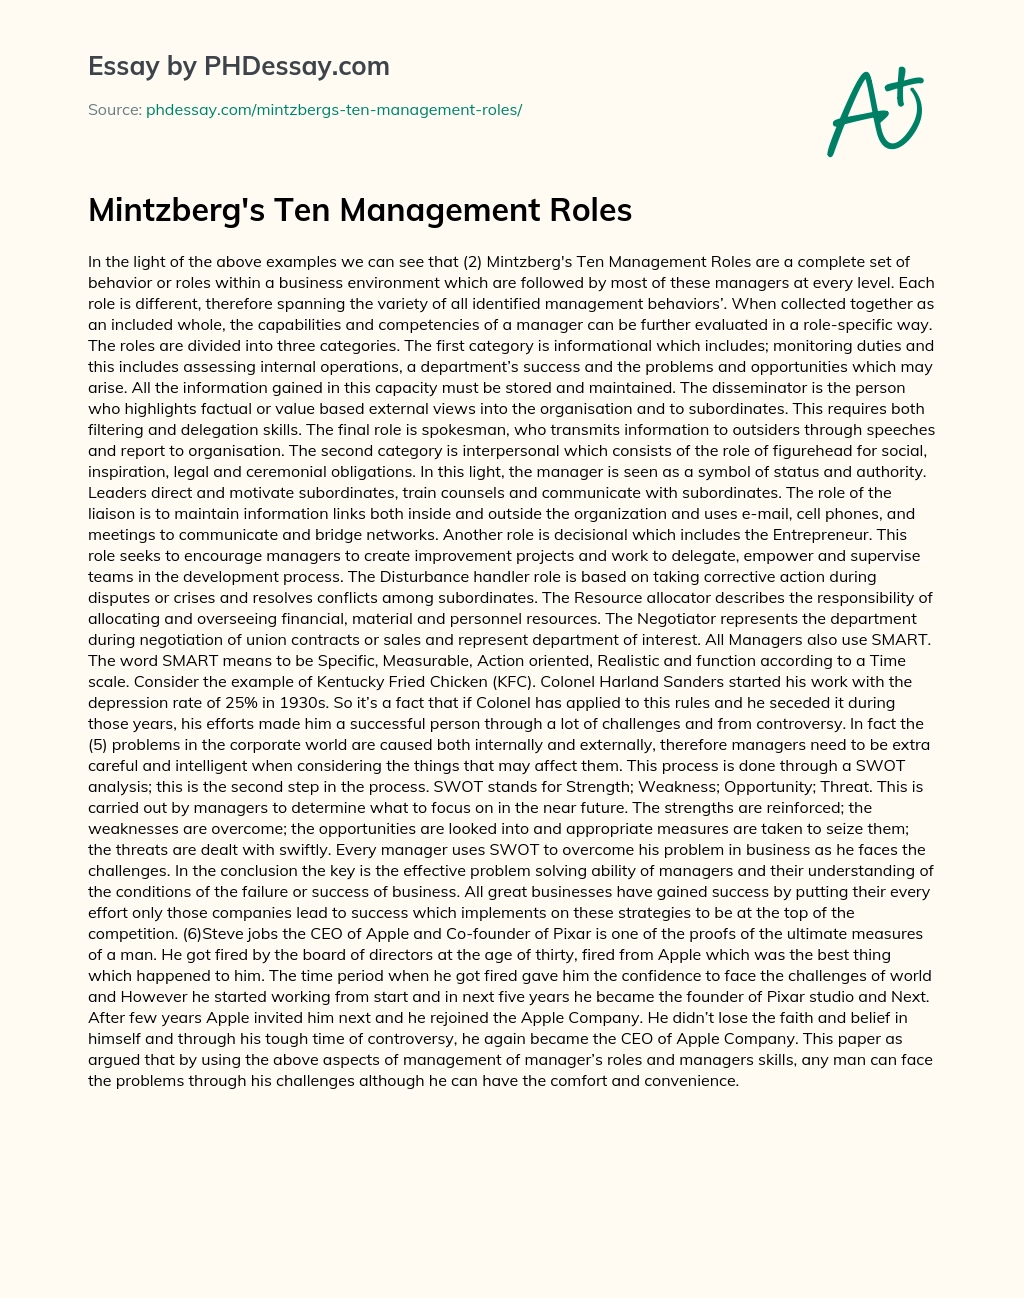 Mintzberg’s Ten Management Roles essay